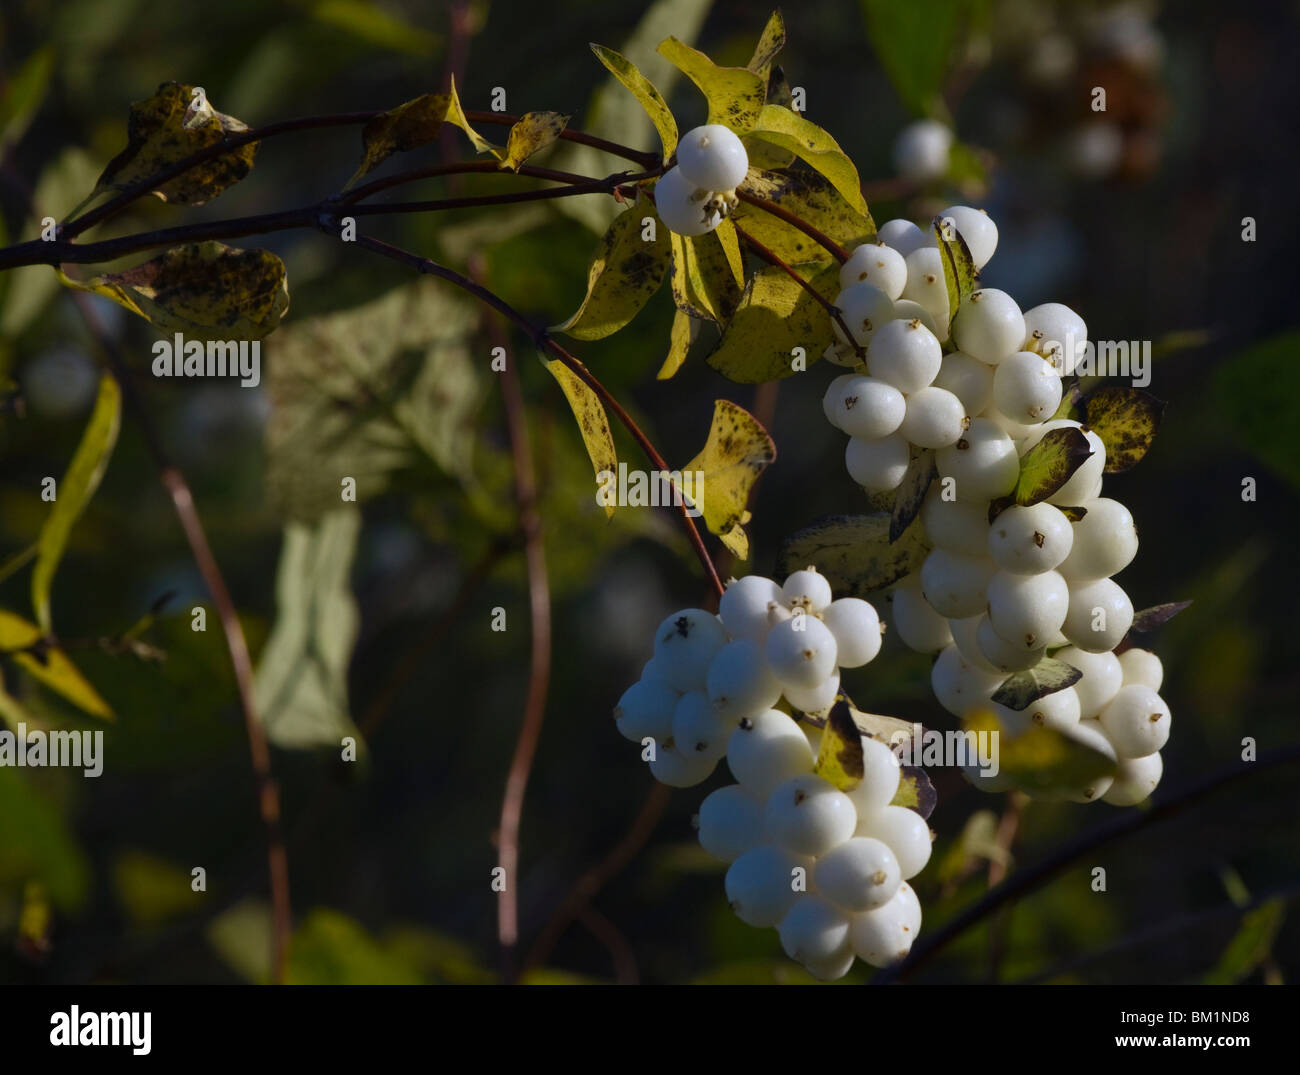 Symphoricarpos x doorenbosii (White Hedge or snow-berry) in autumn colors Stock Photo